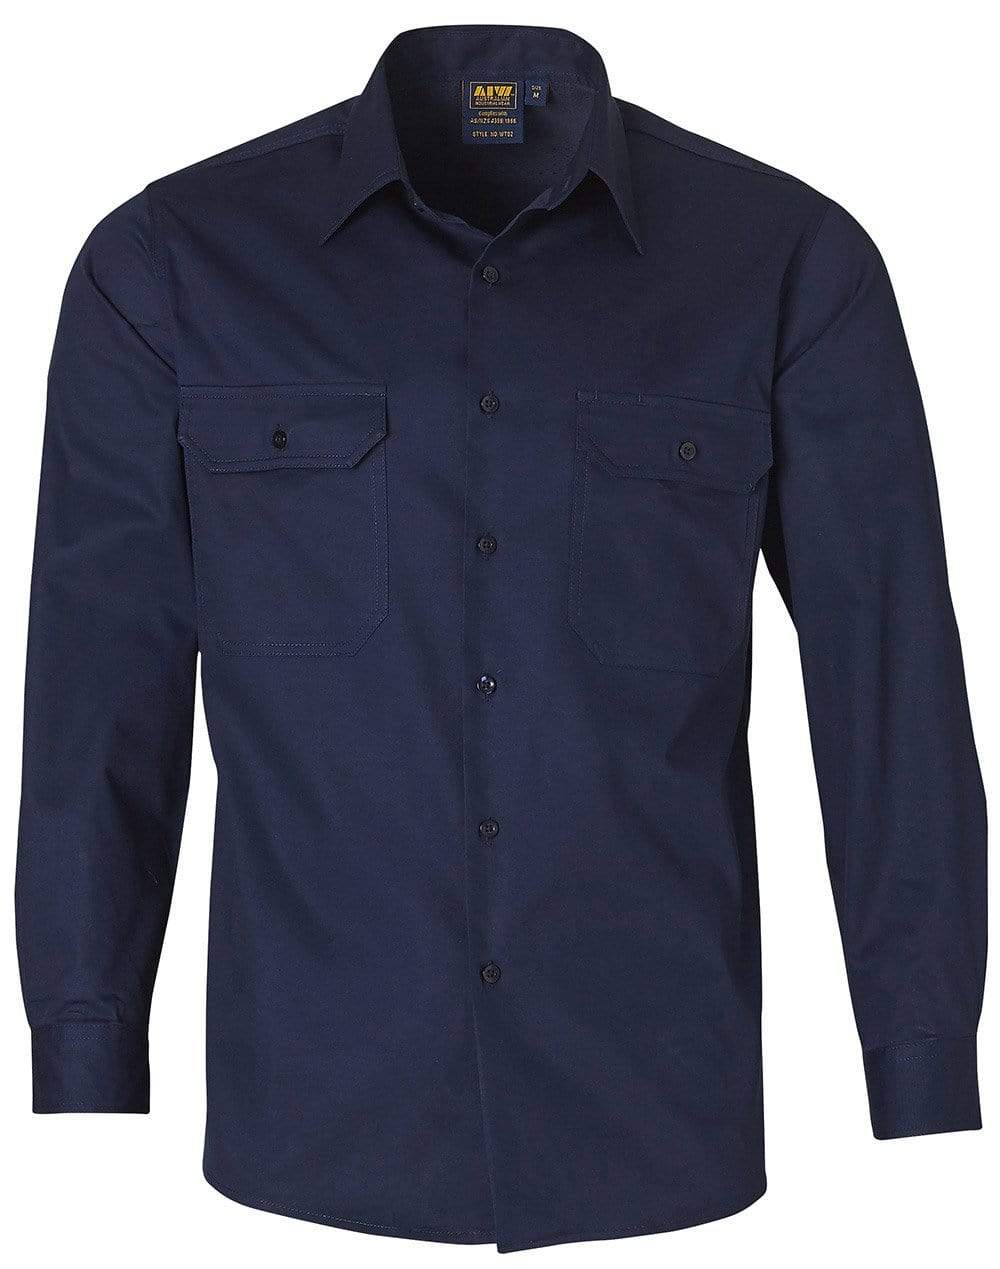 Australian Industrial Wear Work Wear Navy / S COTTON work shirt WT02